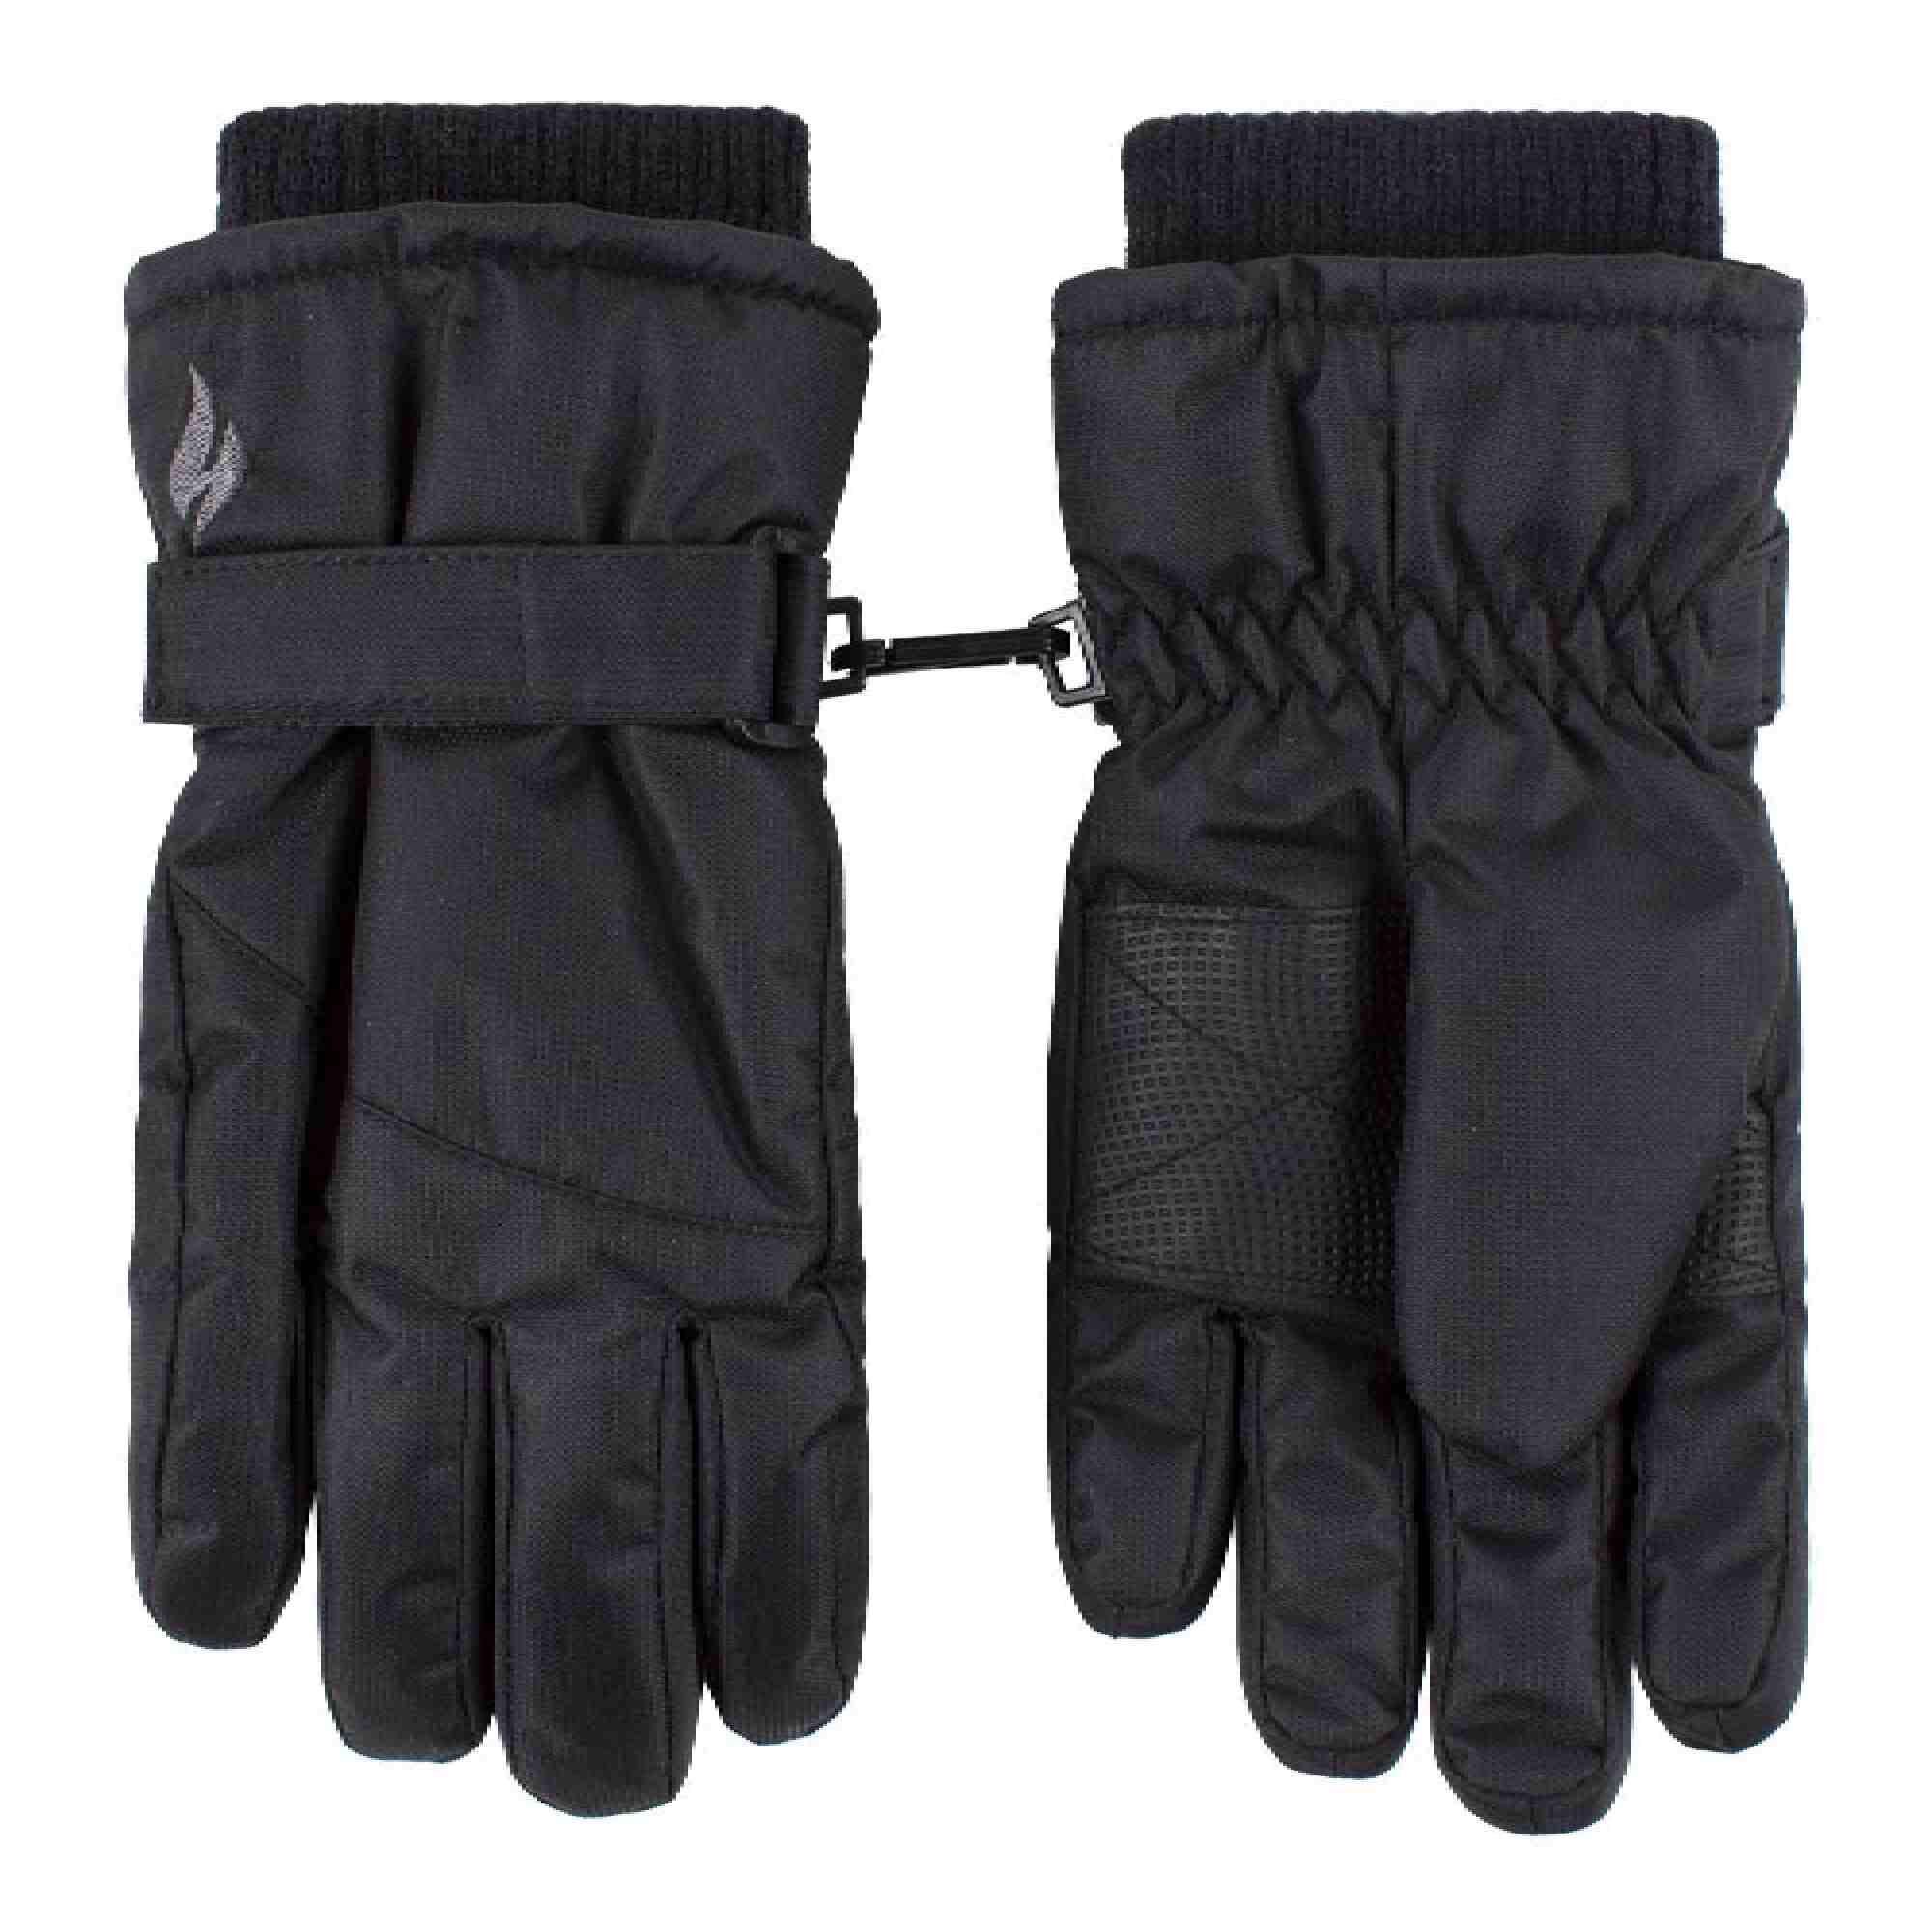 HEAT HOLDERS Childrens Black Winter Fleece Lined Waterproof Thermal Snow Ski Gloves